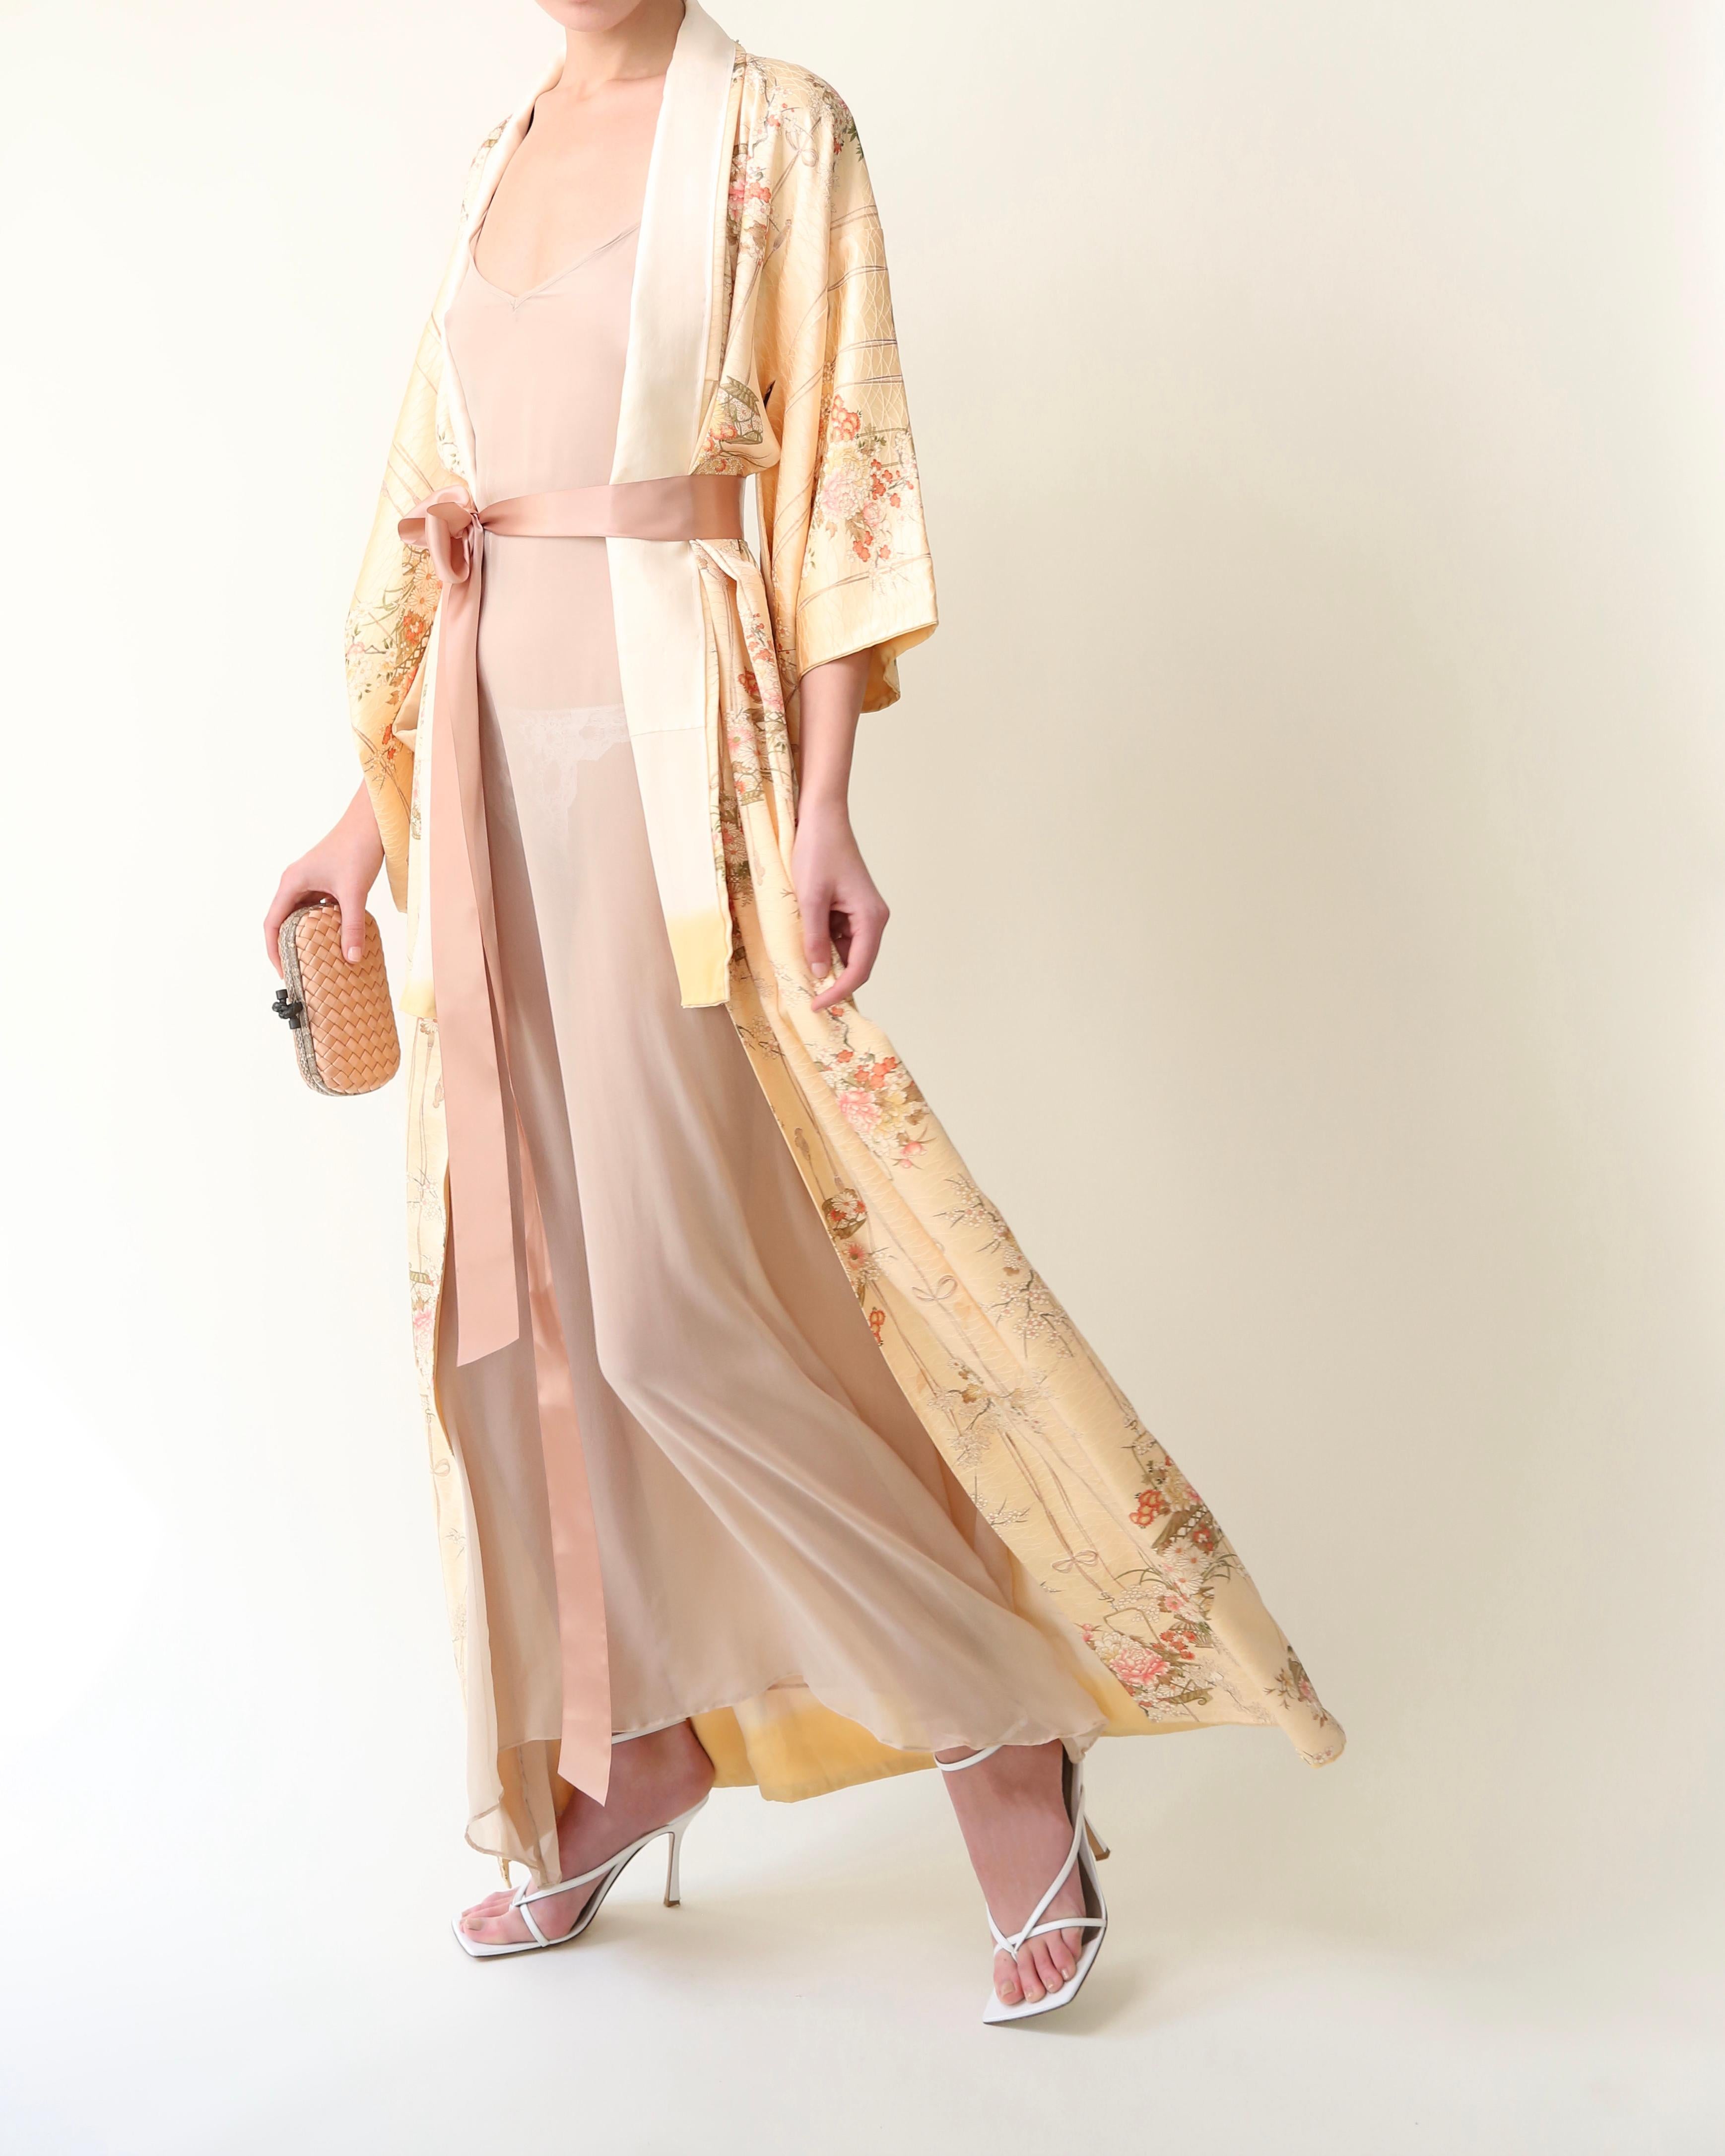 Japanischer Vintage-Kimono aus 100% Seideu2028
Handgefertigt in Japan 
Bodenlänge
Blasser Pfirsich mit farbigem Aufdruck
Kommt mit einem errötenden rosa Seidenband, das Ihnen die Möglichkeit gibt, dies offen oder geschlossen zu